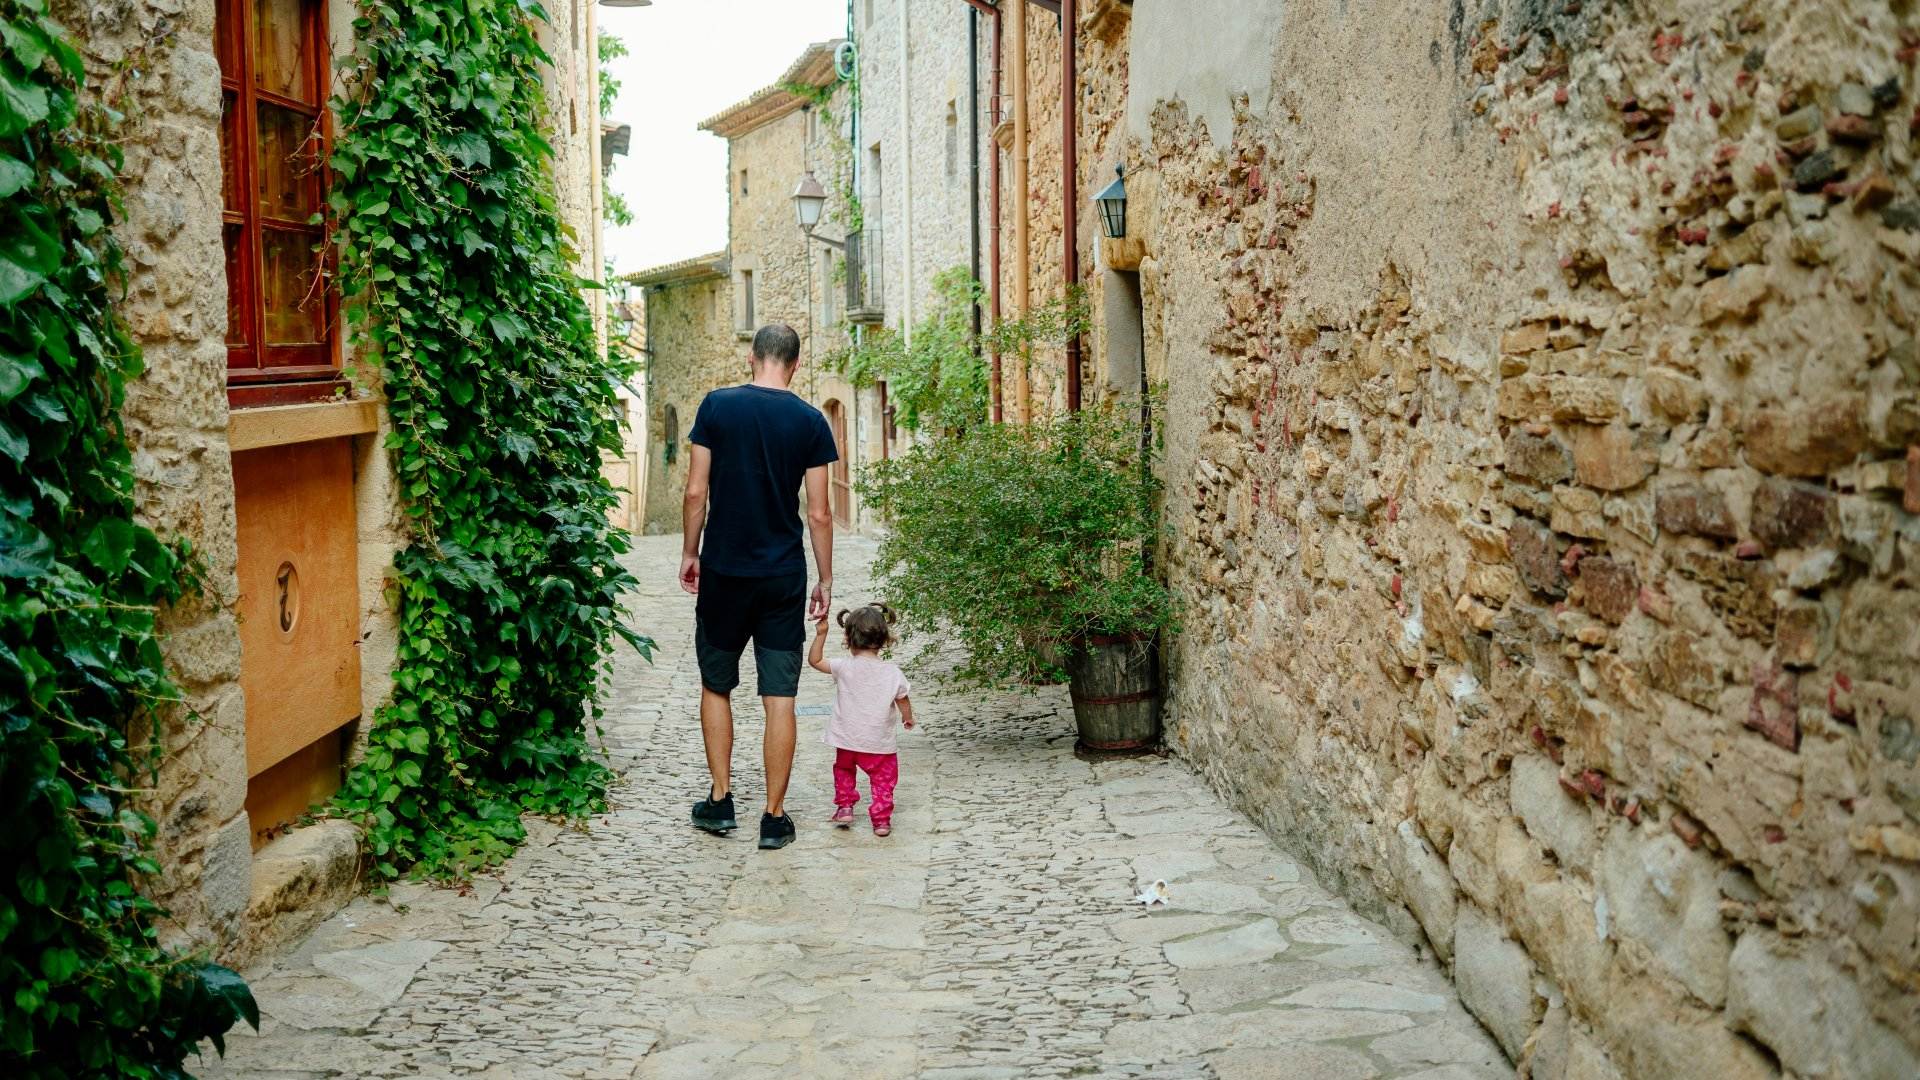 Els 7 pobles més bonics de Girona: no te'n perdis ni un!